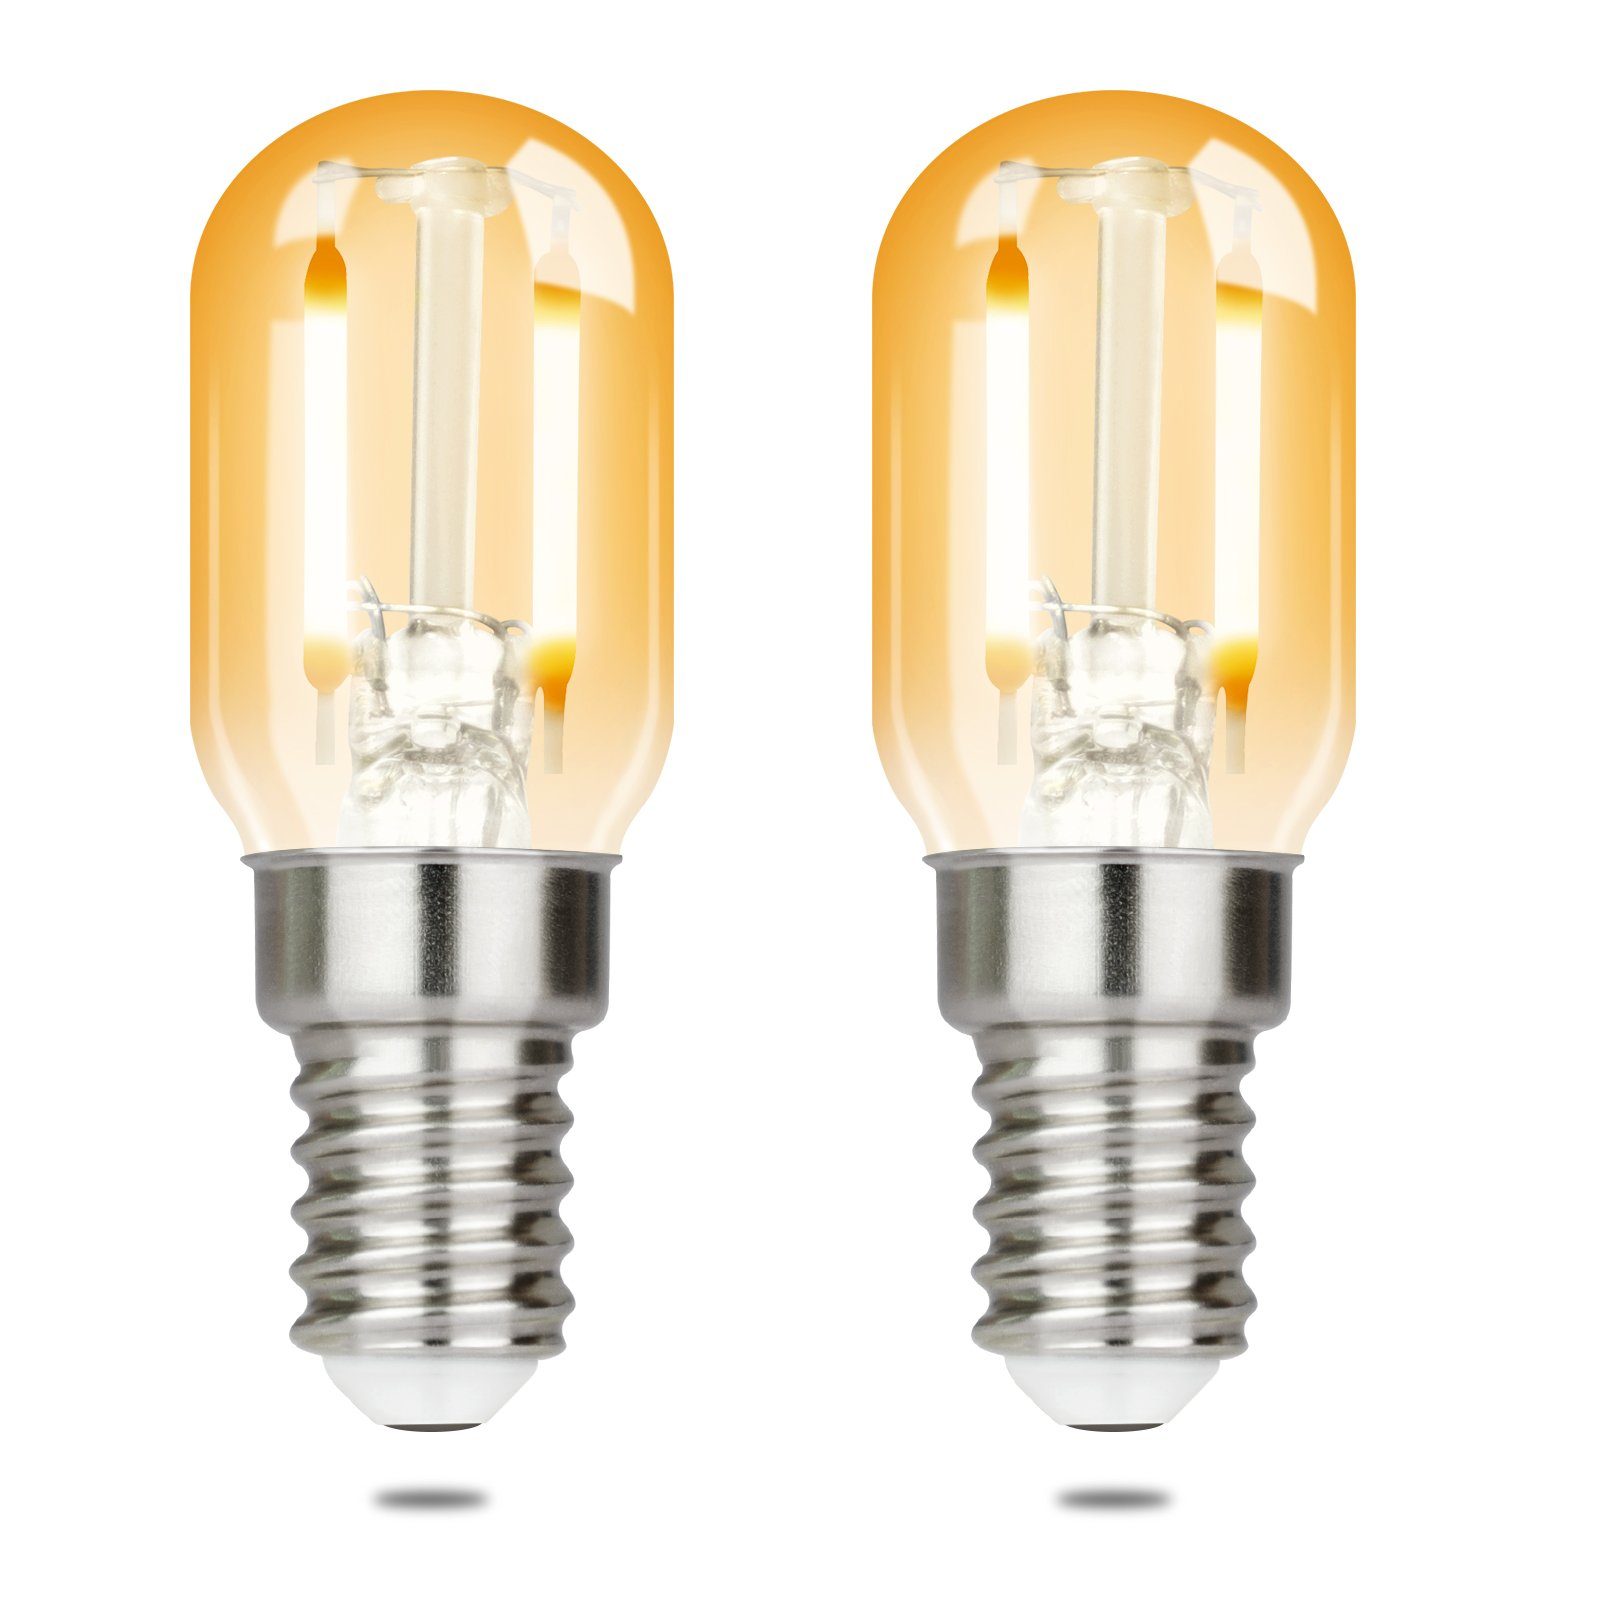 Nettlife LED-Leuchtmittel LED Leuchtmittel E14 Vintage Glühbirnen T22 Lampe Birnen 2W, E14, 2 St., Warmweiß, 2700K